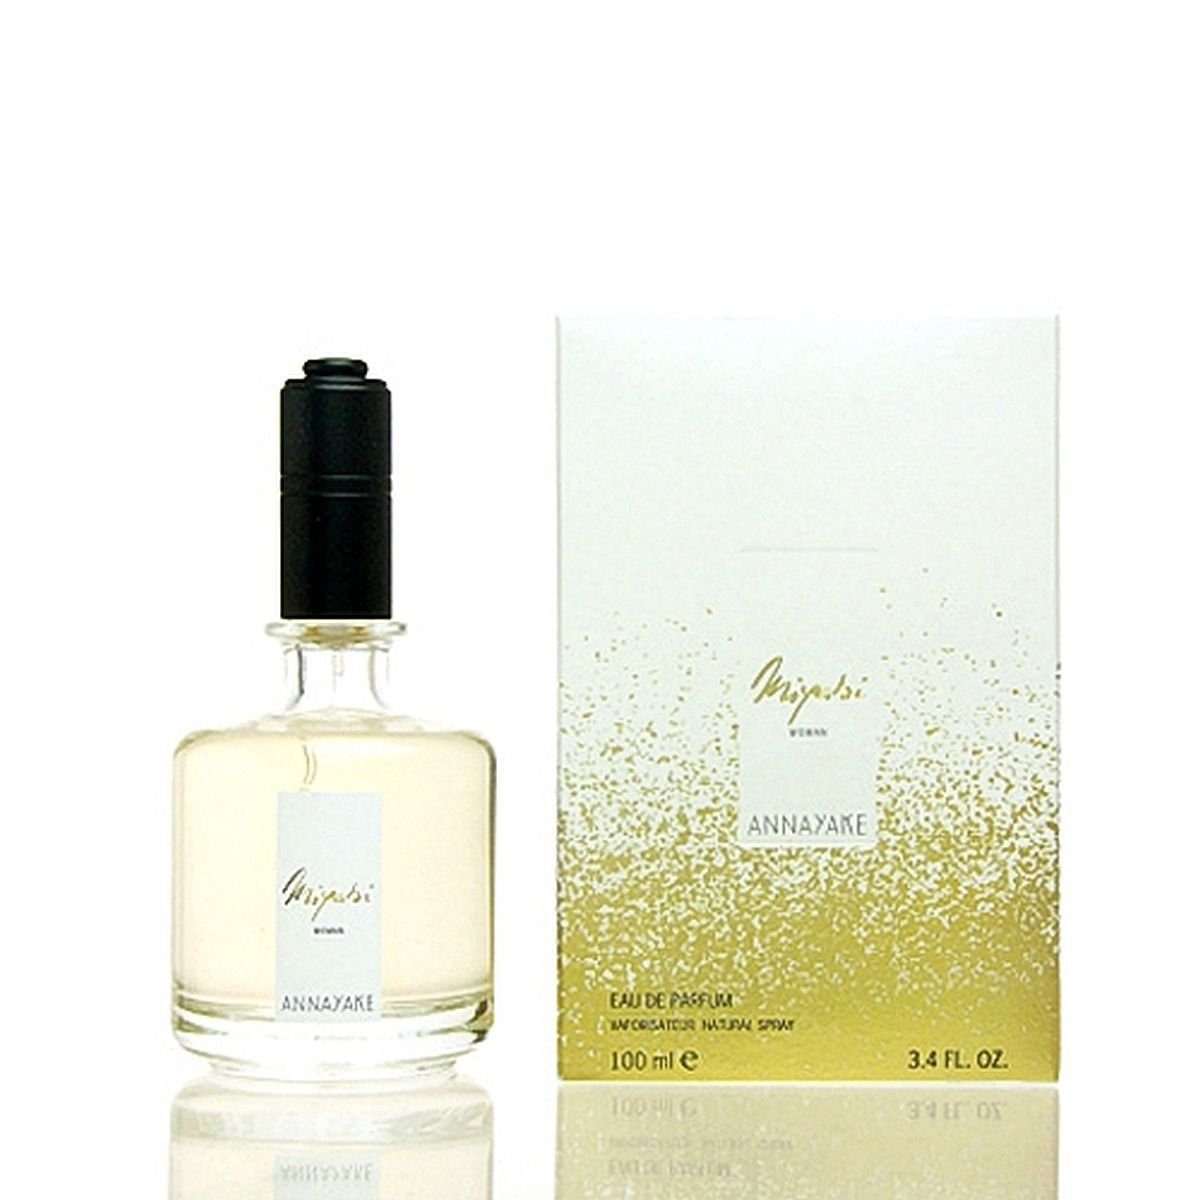 ANNAYAKE Eau de Parfum Annayake de Woman de Miyabi Parfum 100 Eau Produktart: Eau ml, Parfum